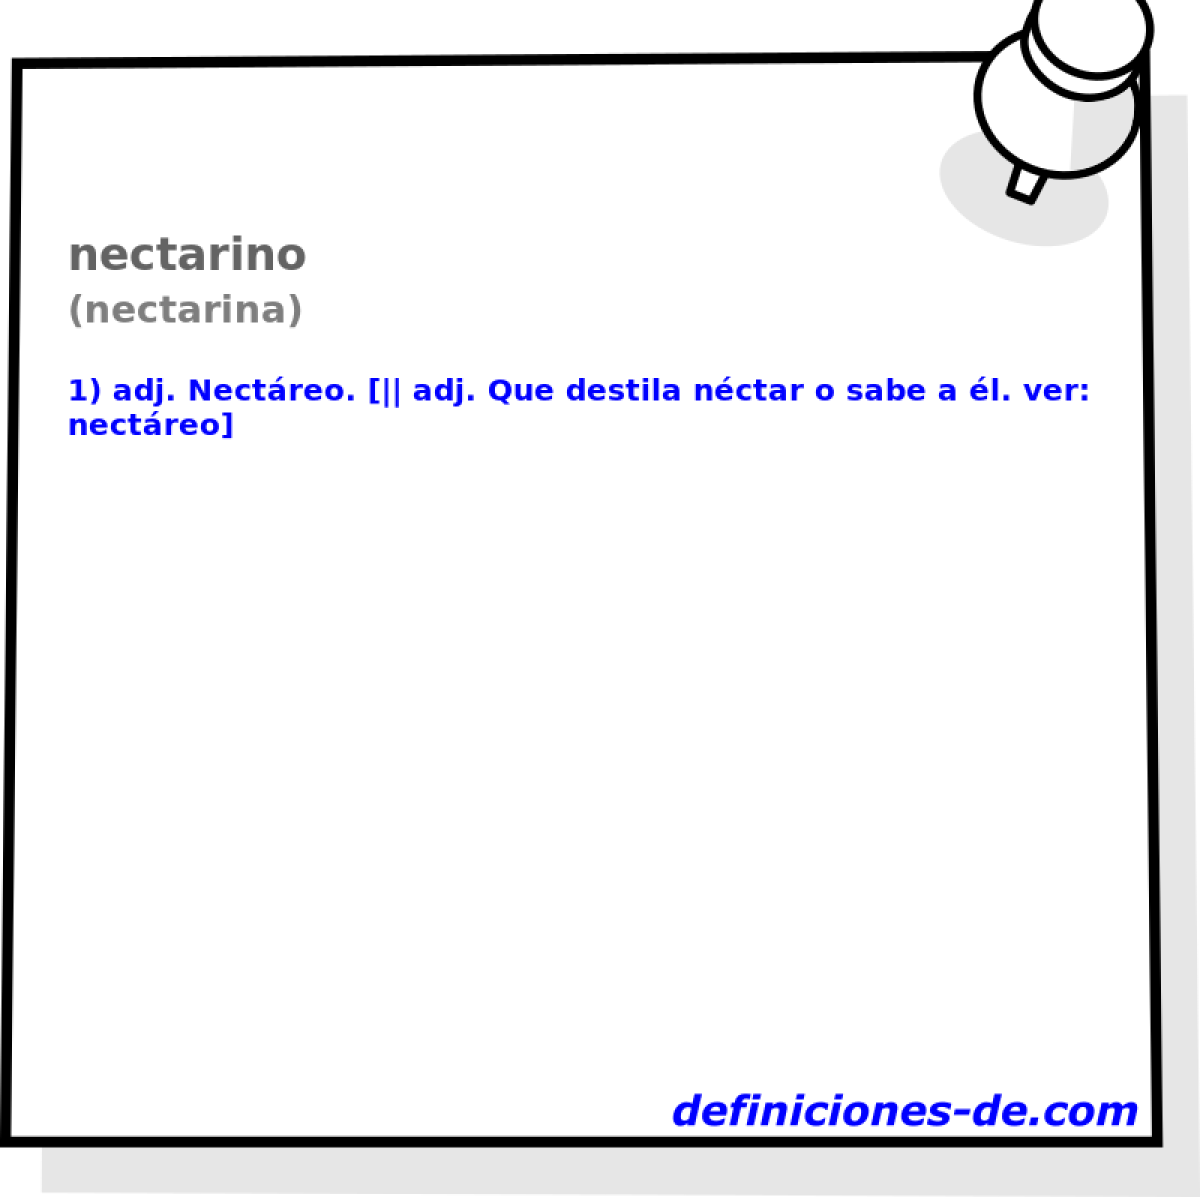 nectarino (nectarina)